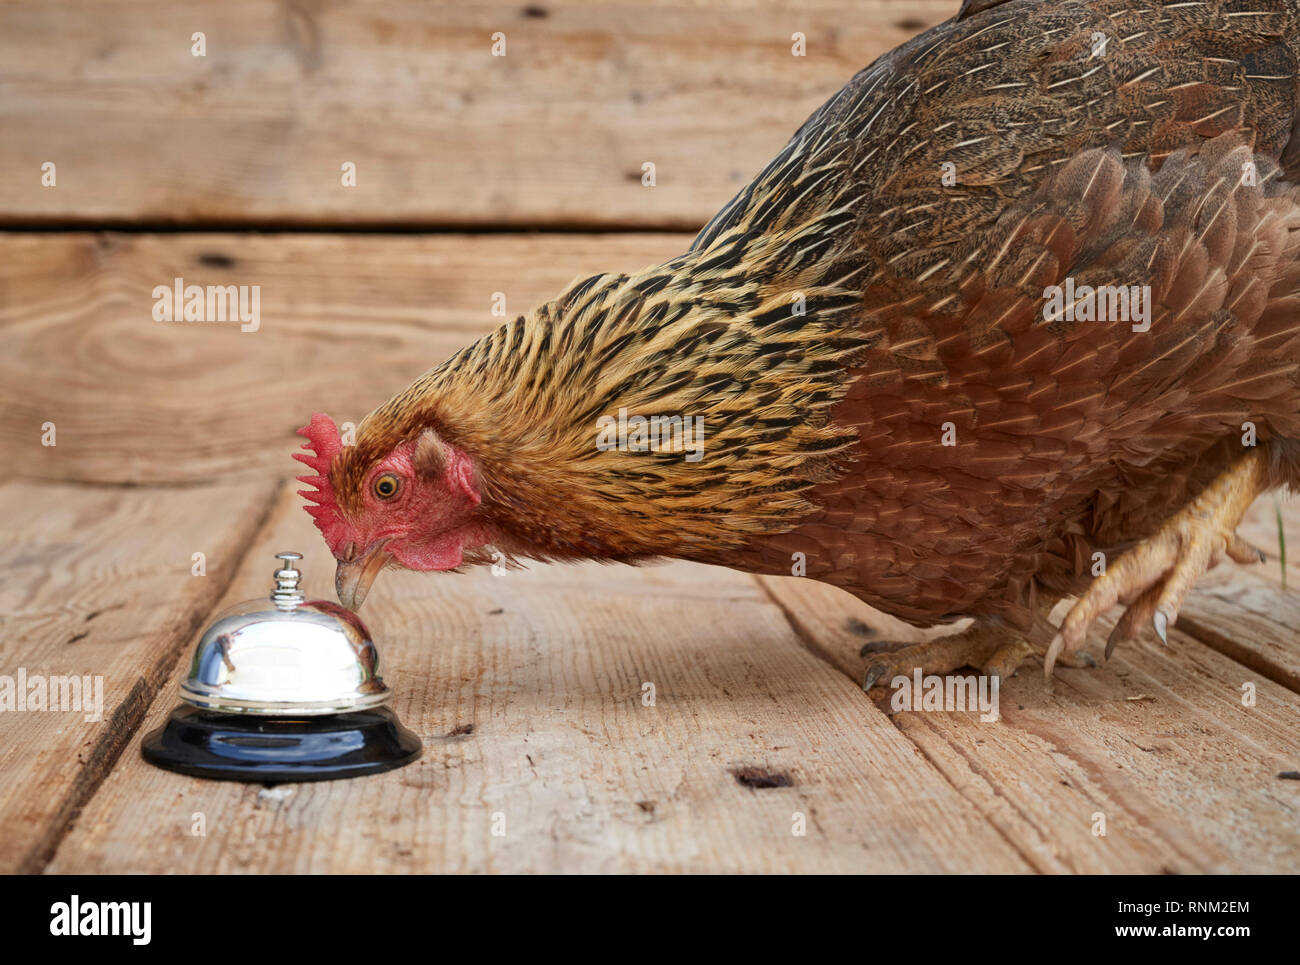 Welsummer poulet. Poule picorant à Bell d'appels de service, afin d'obtenir un traitement. Allemagne Banque D'Images